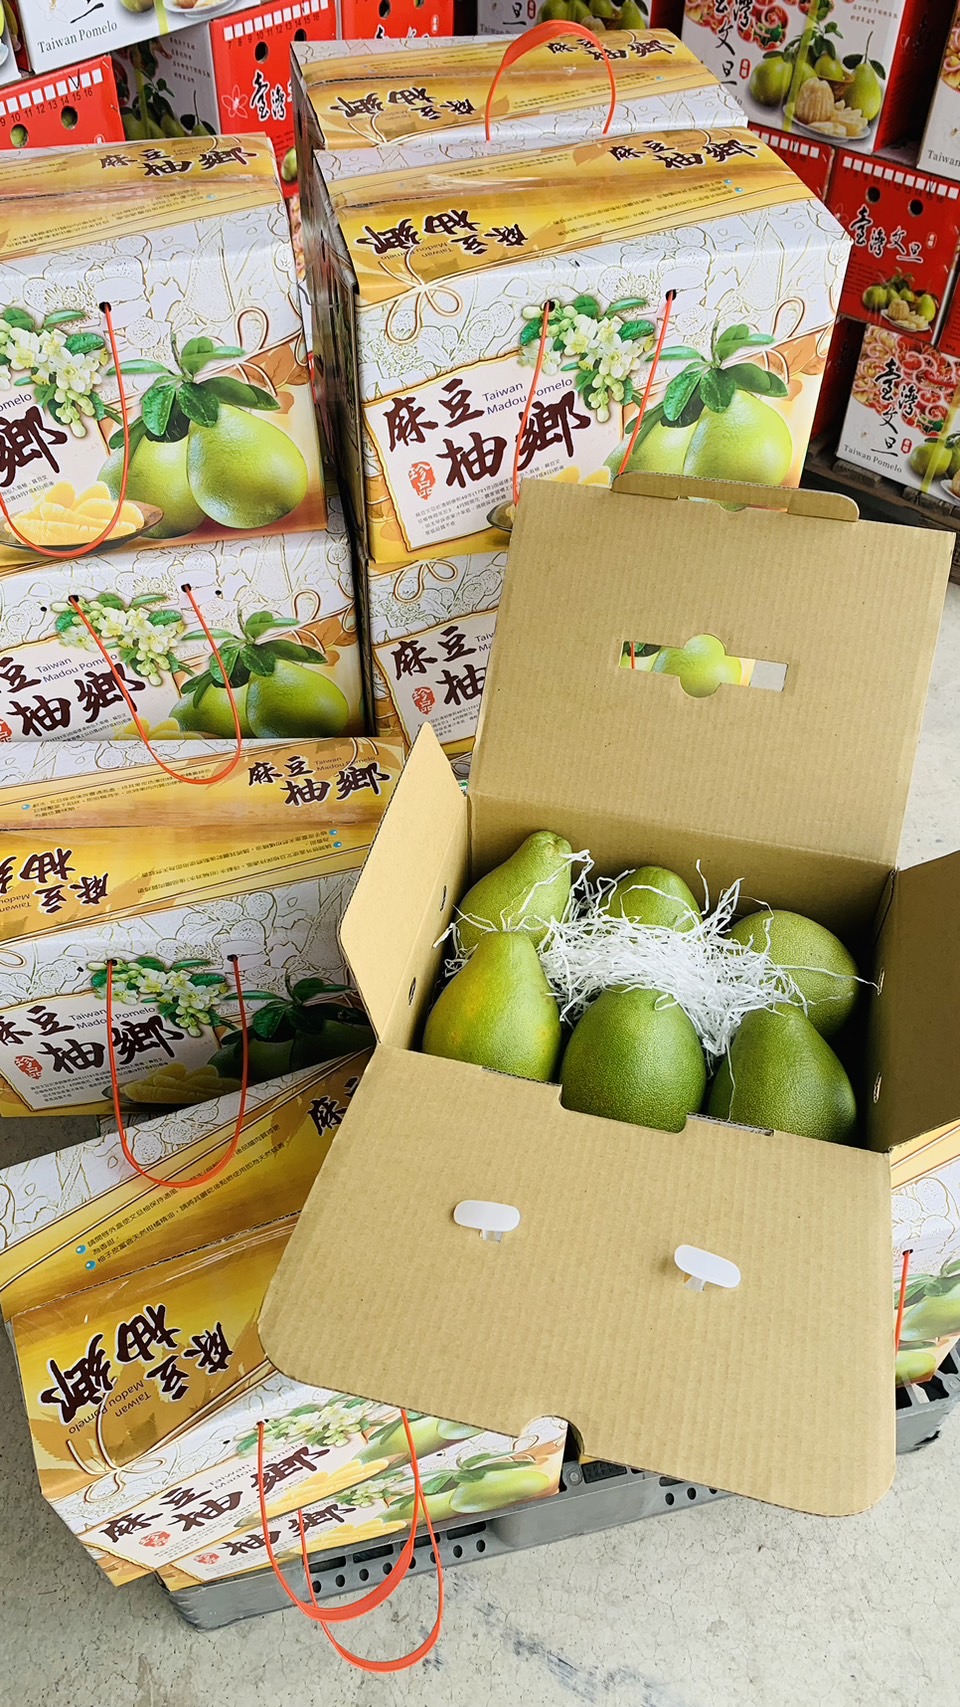 麻豆文旦禮盒3公斤(含運費)